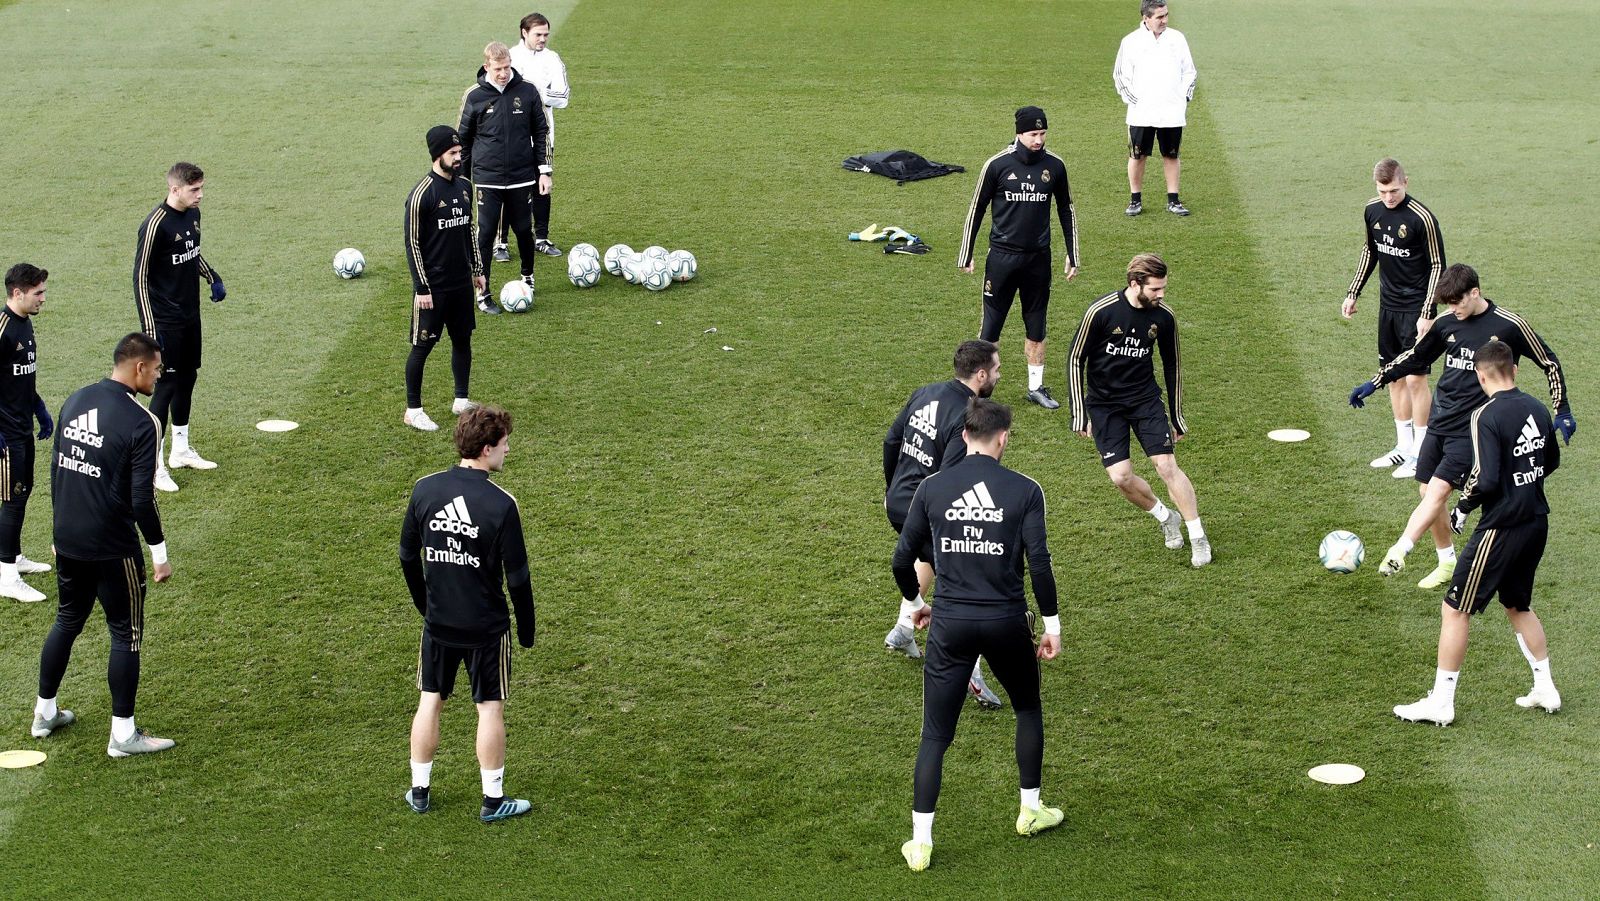 El Madrid afronta el trámite de Brujas pensando en la Liga